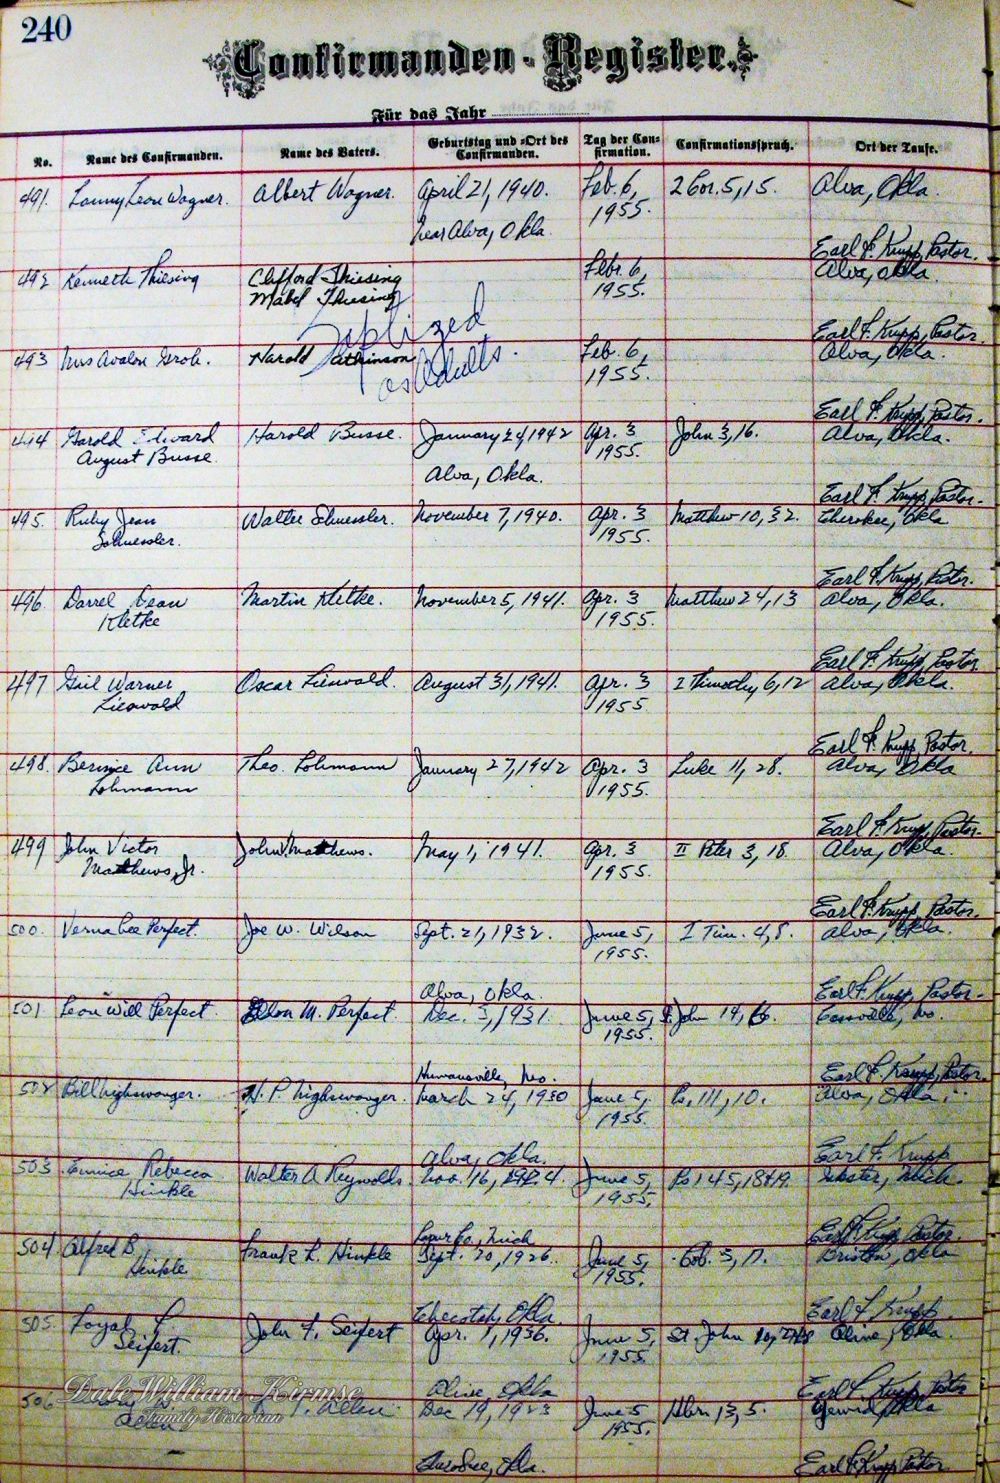 Zion Lutheran Church - Alva Confirmation Record - 1955[3]